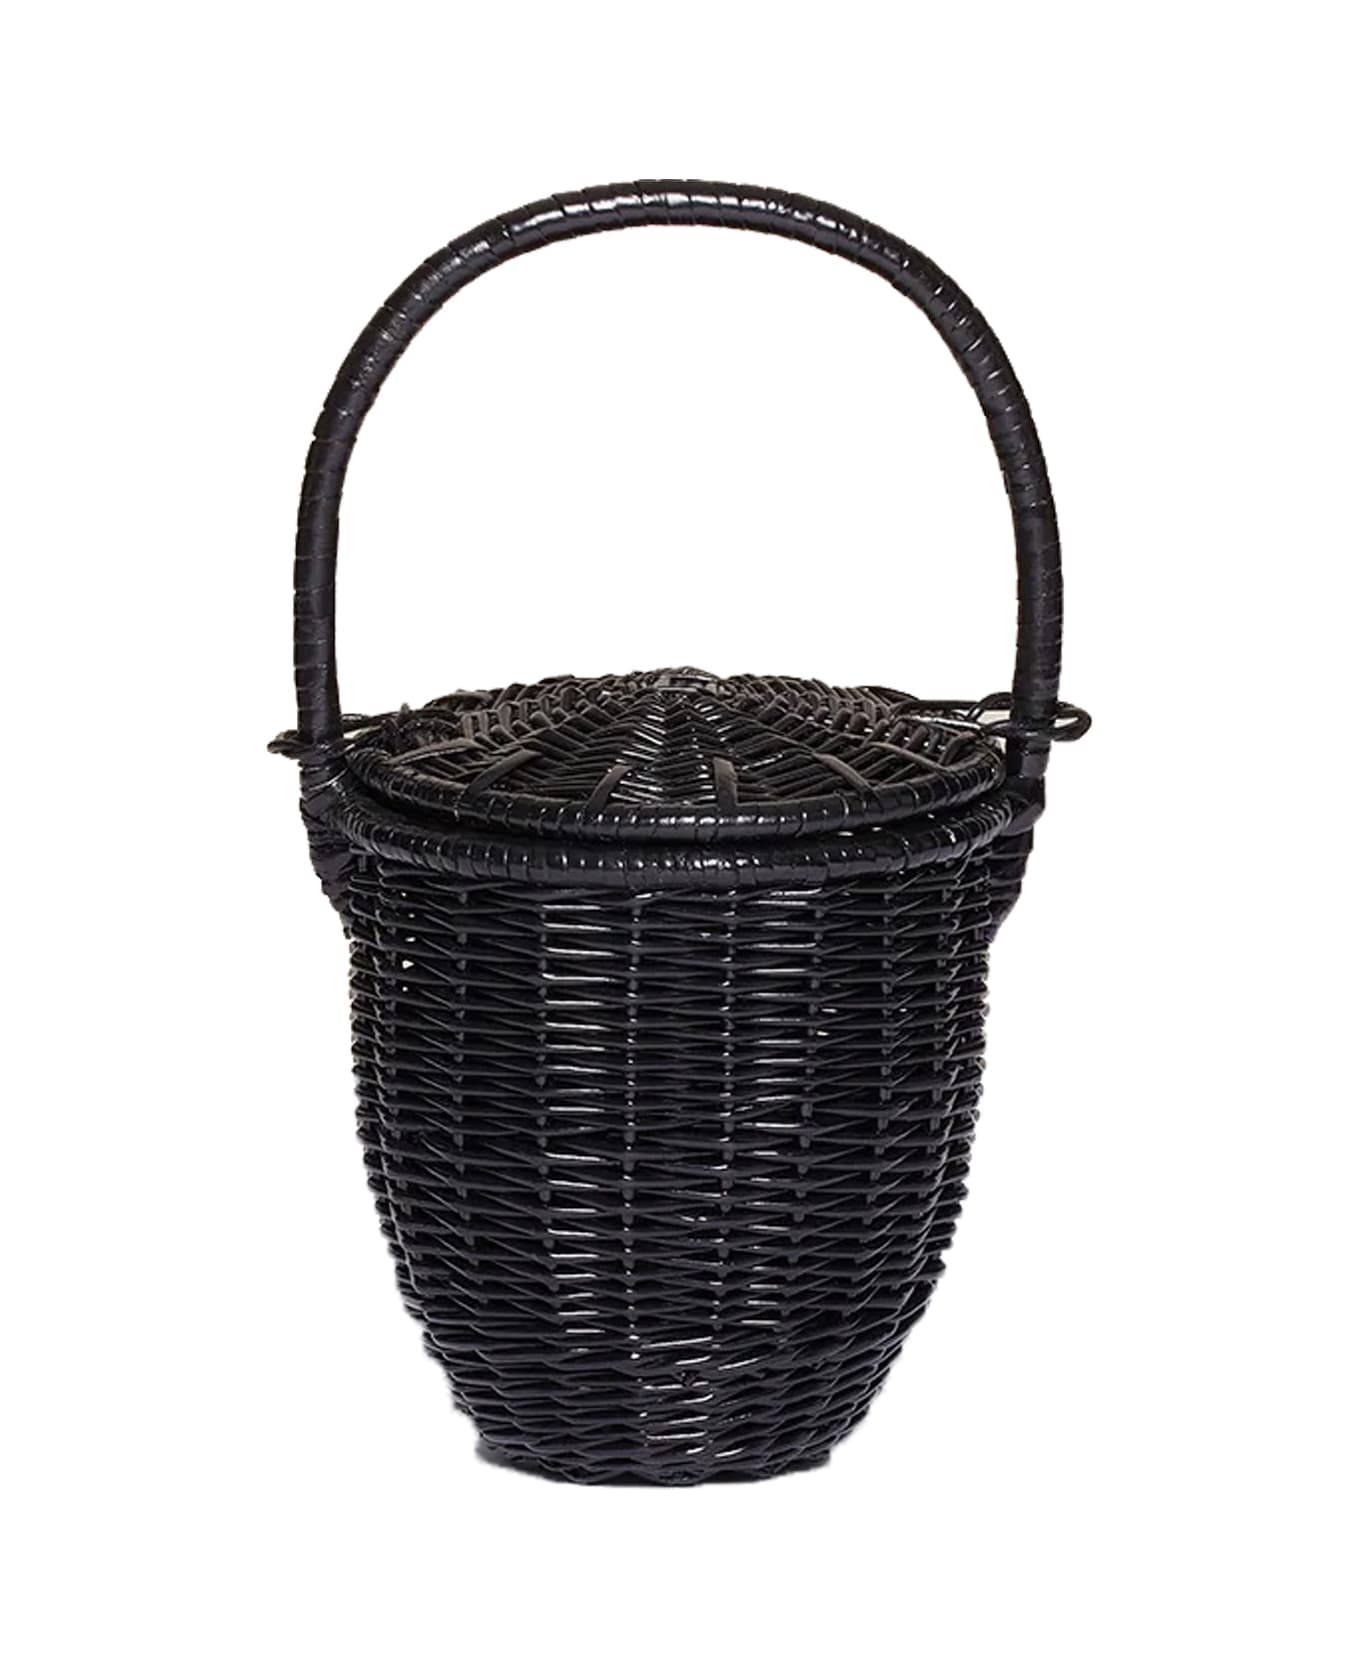 Patou Handbag - Black